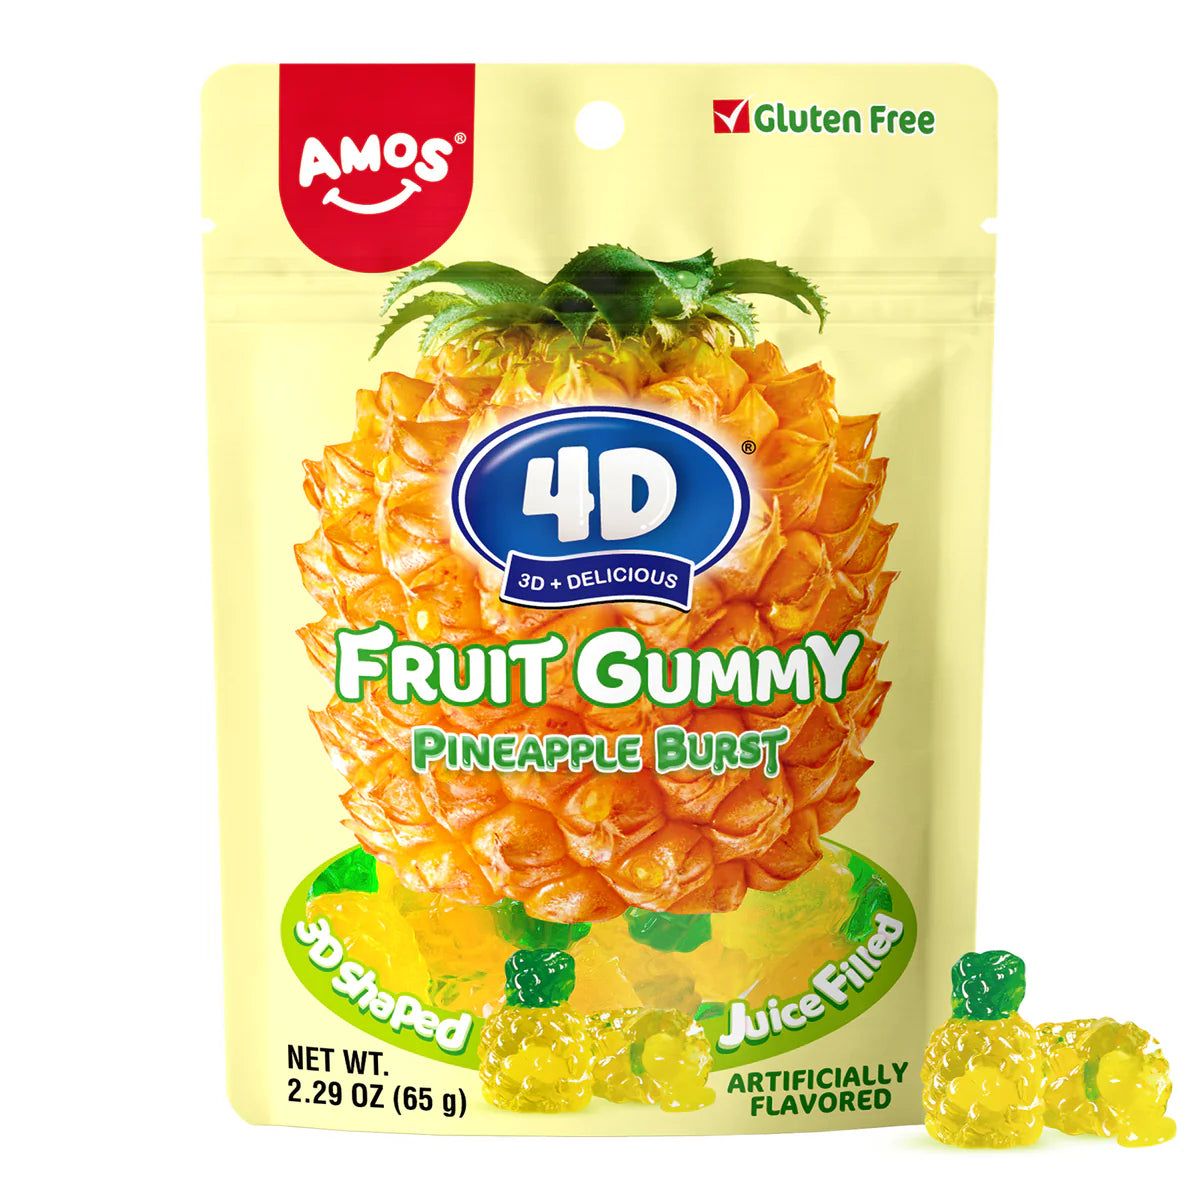 4D Fruit Gummy Pineapple Burst